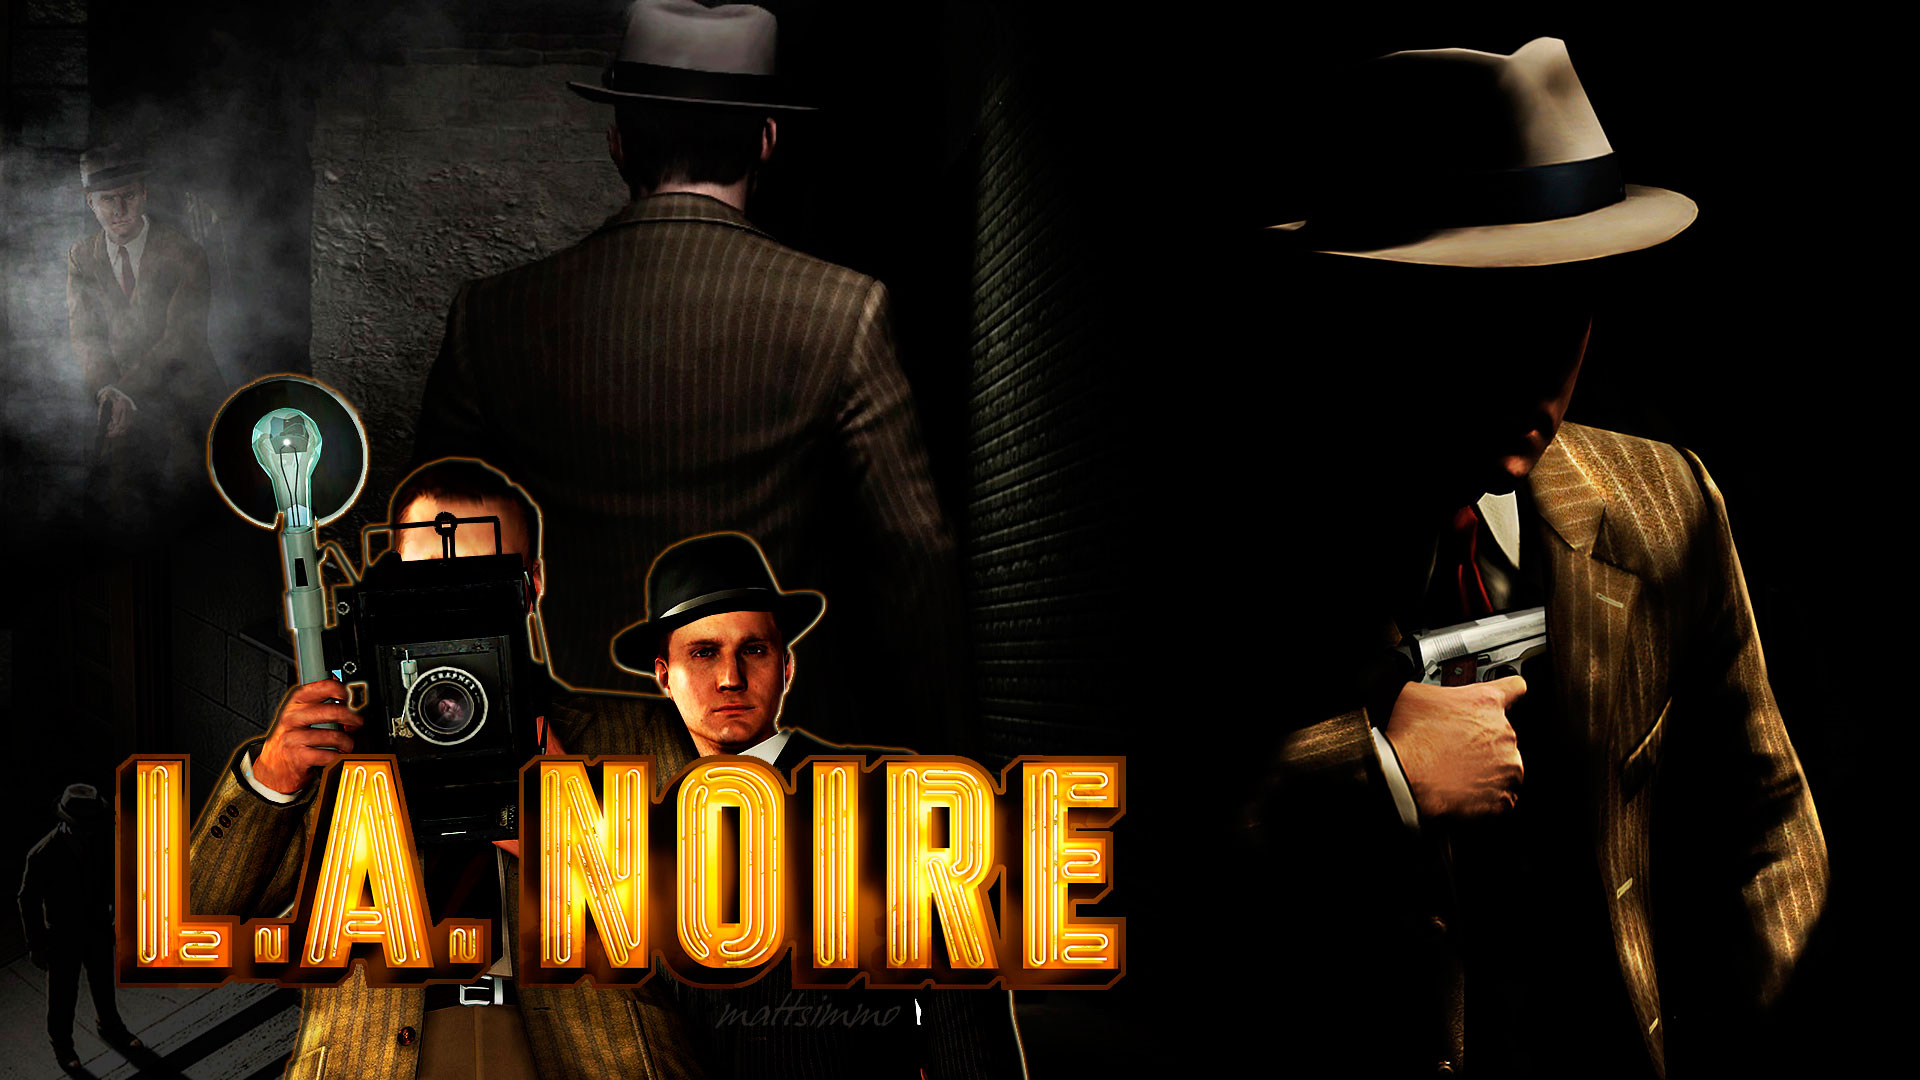 La Noire Wallpaper In HD High Resolution